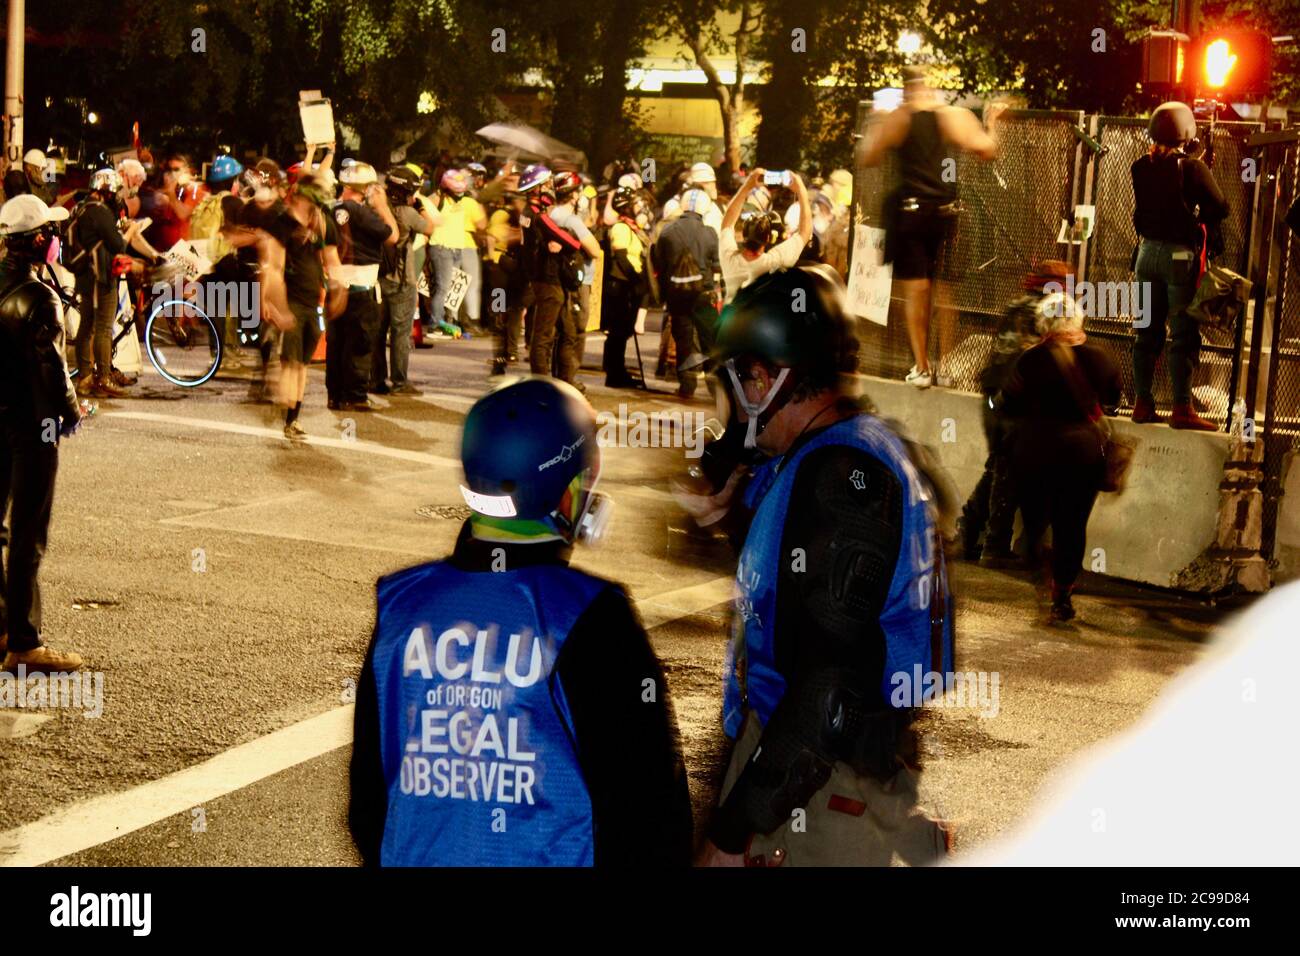 Portland, Oregon, USA. Juli 2020. ACLU Rechtliche Beobachter bei den Protesten in Portland. Jede Nacht wurden sie von Bundesagenten zusammen mit den anderen Protestierenden mit Tränengastern vergast. Quelle: Amy Katz/ZUMA Wire/Alamy Live News Stockfoto